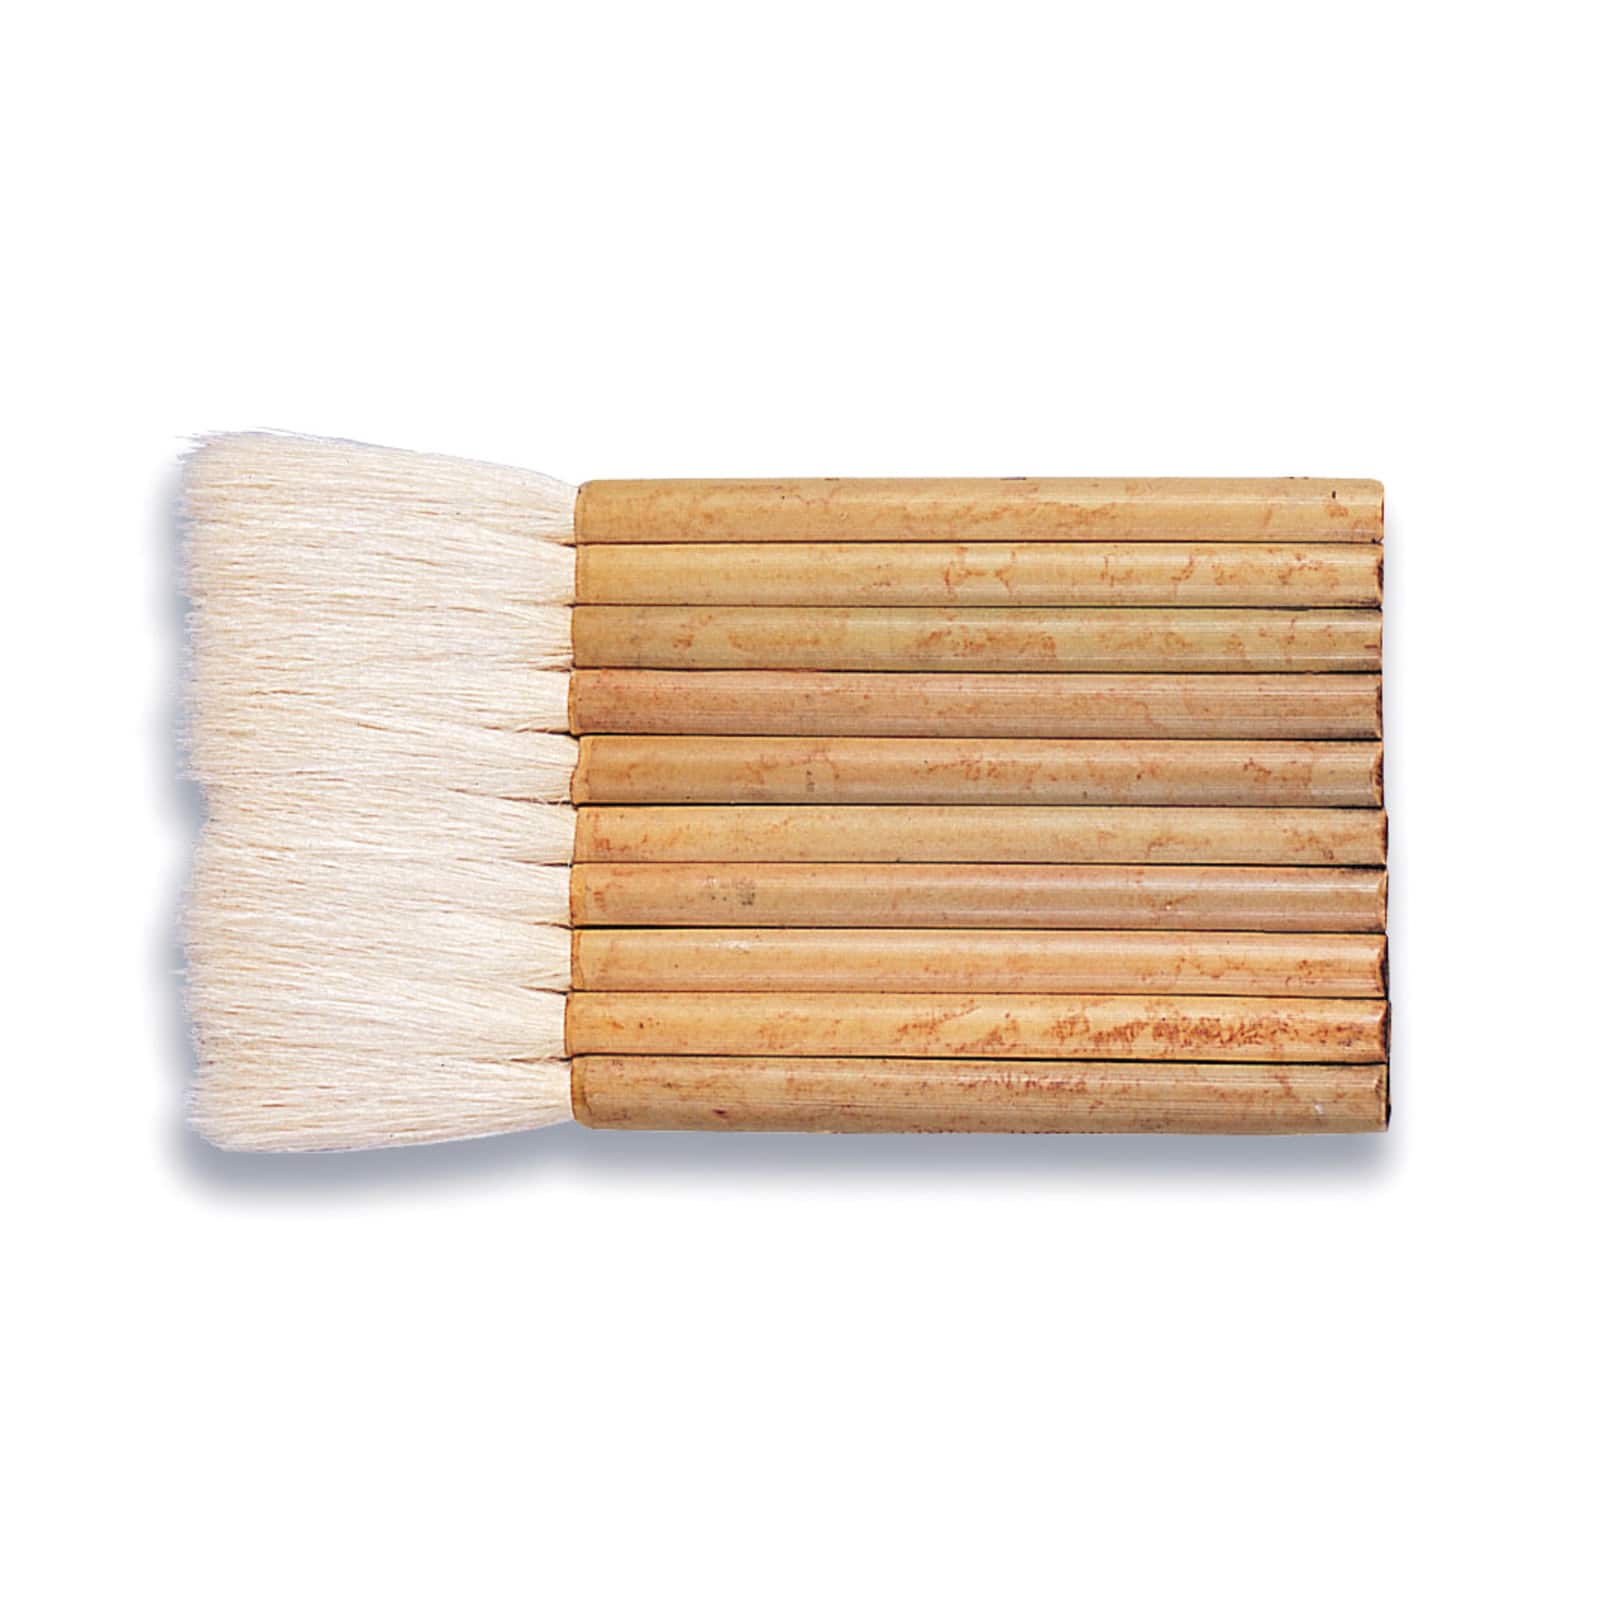 Yasutomo 1 Sheep Hair Hake Brush